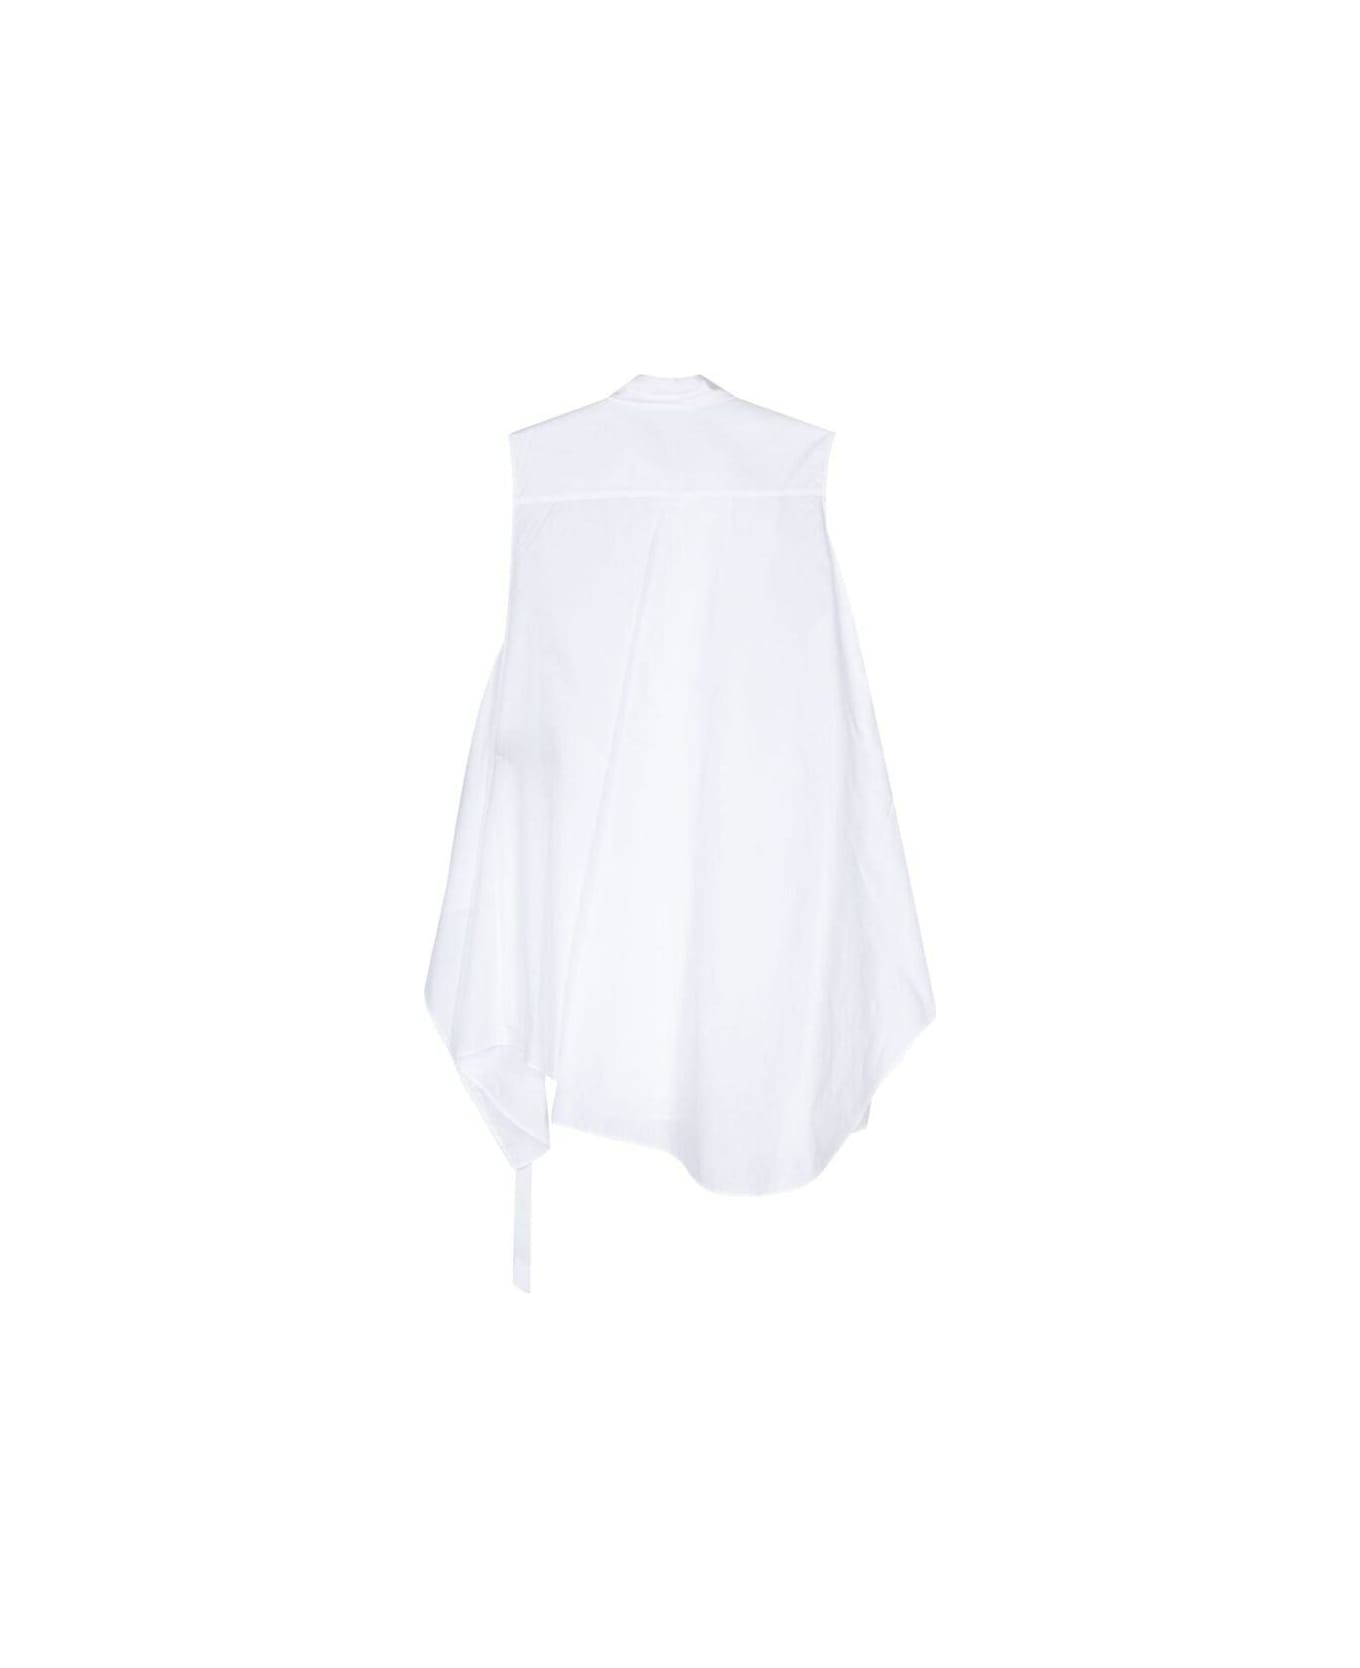 Ann Demeulemeester Sleeveless Shirt - WHITE